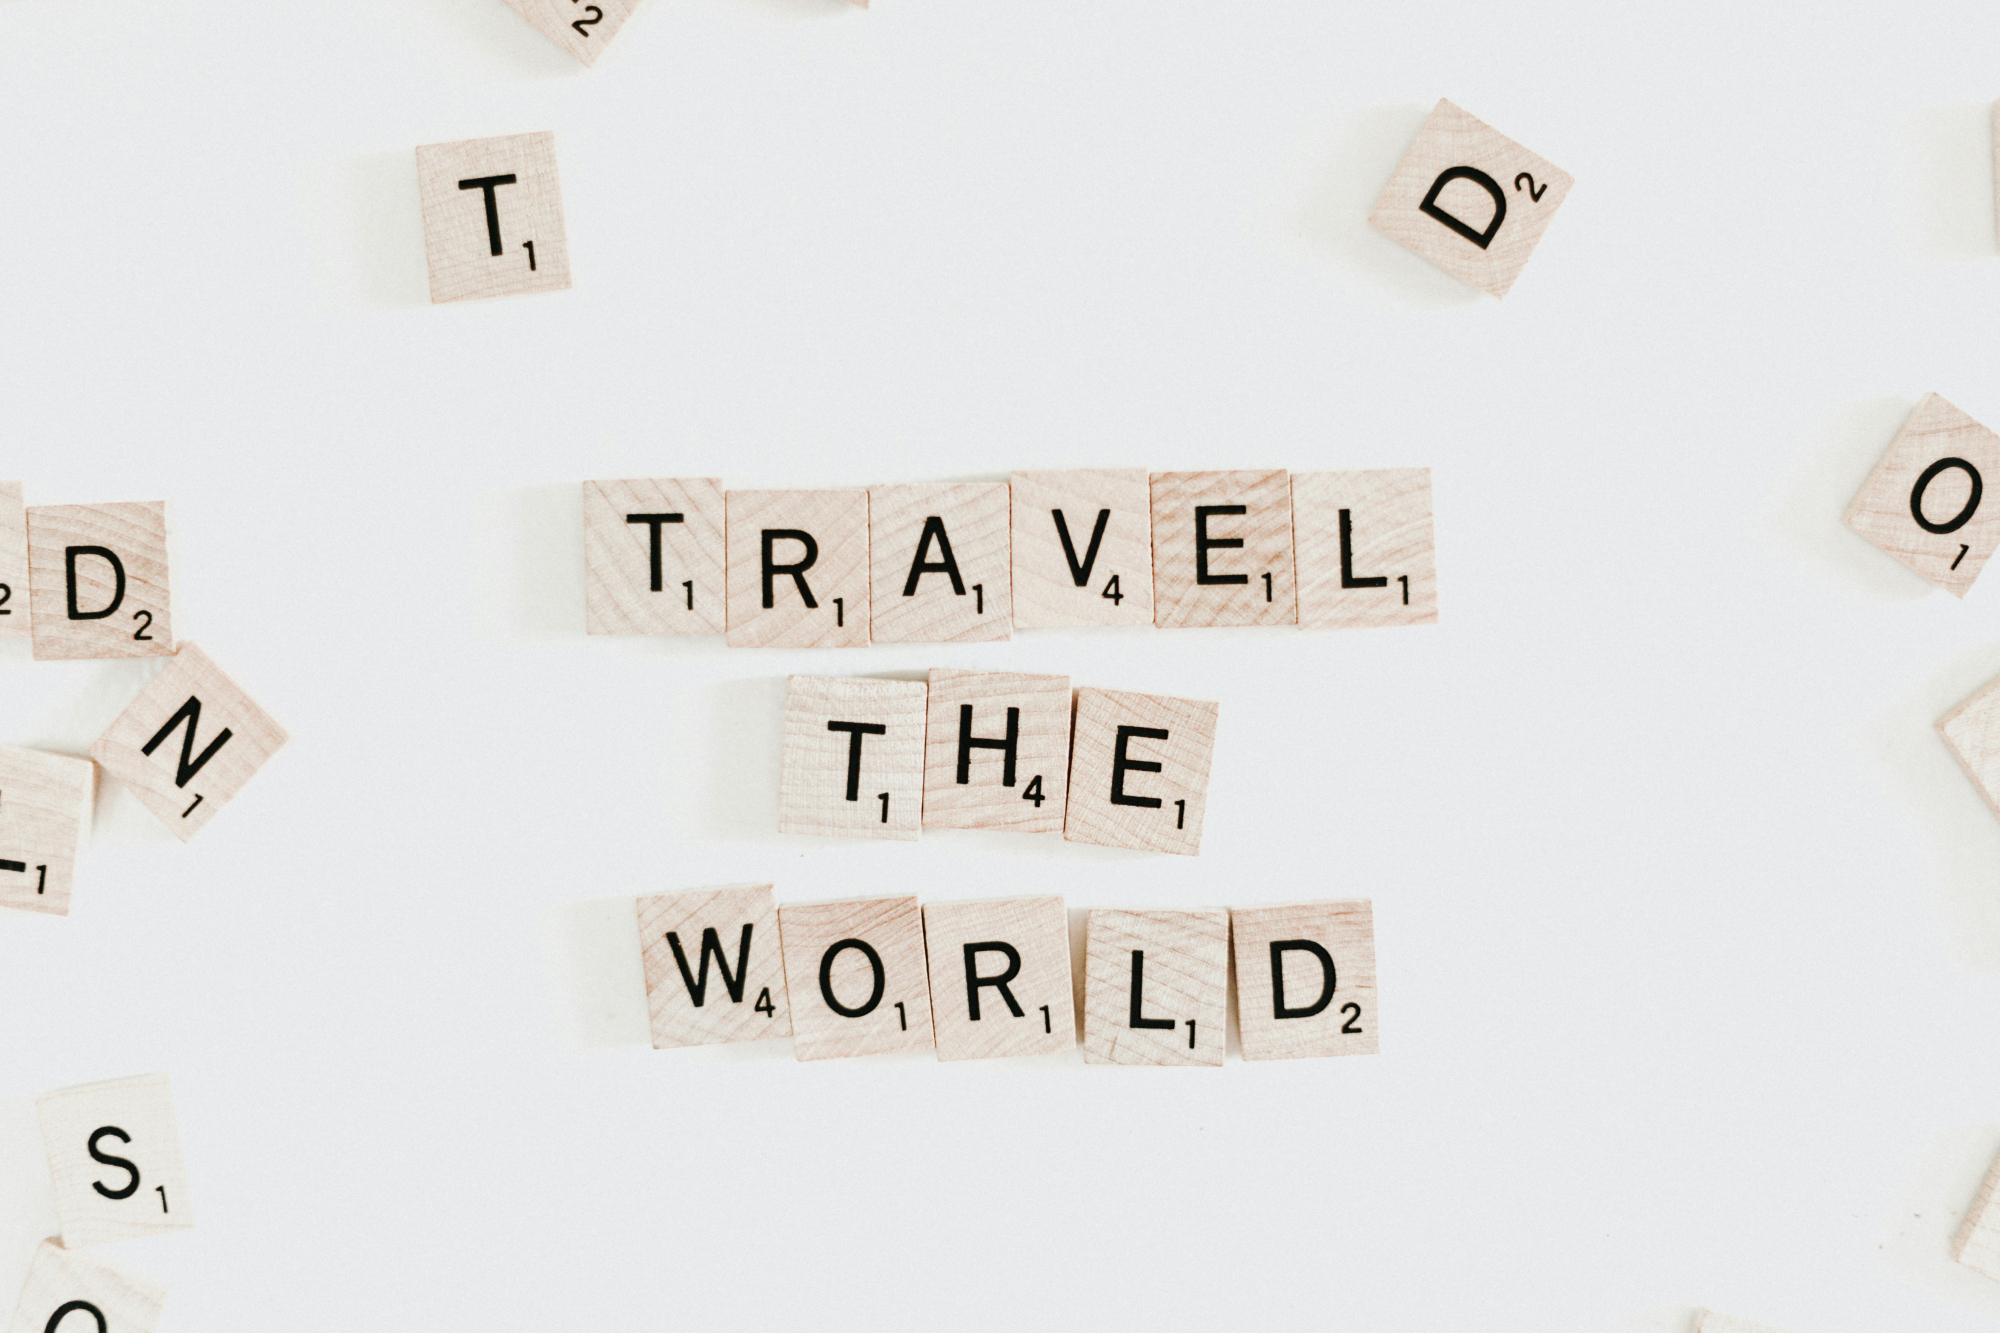 découvrez des conseils de voyage utiles pour une expérience inoubliable avec nos travel tips.